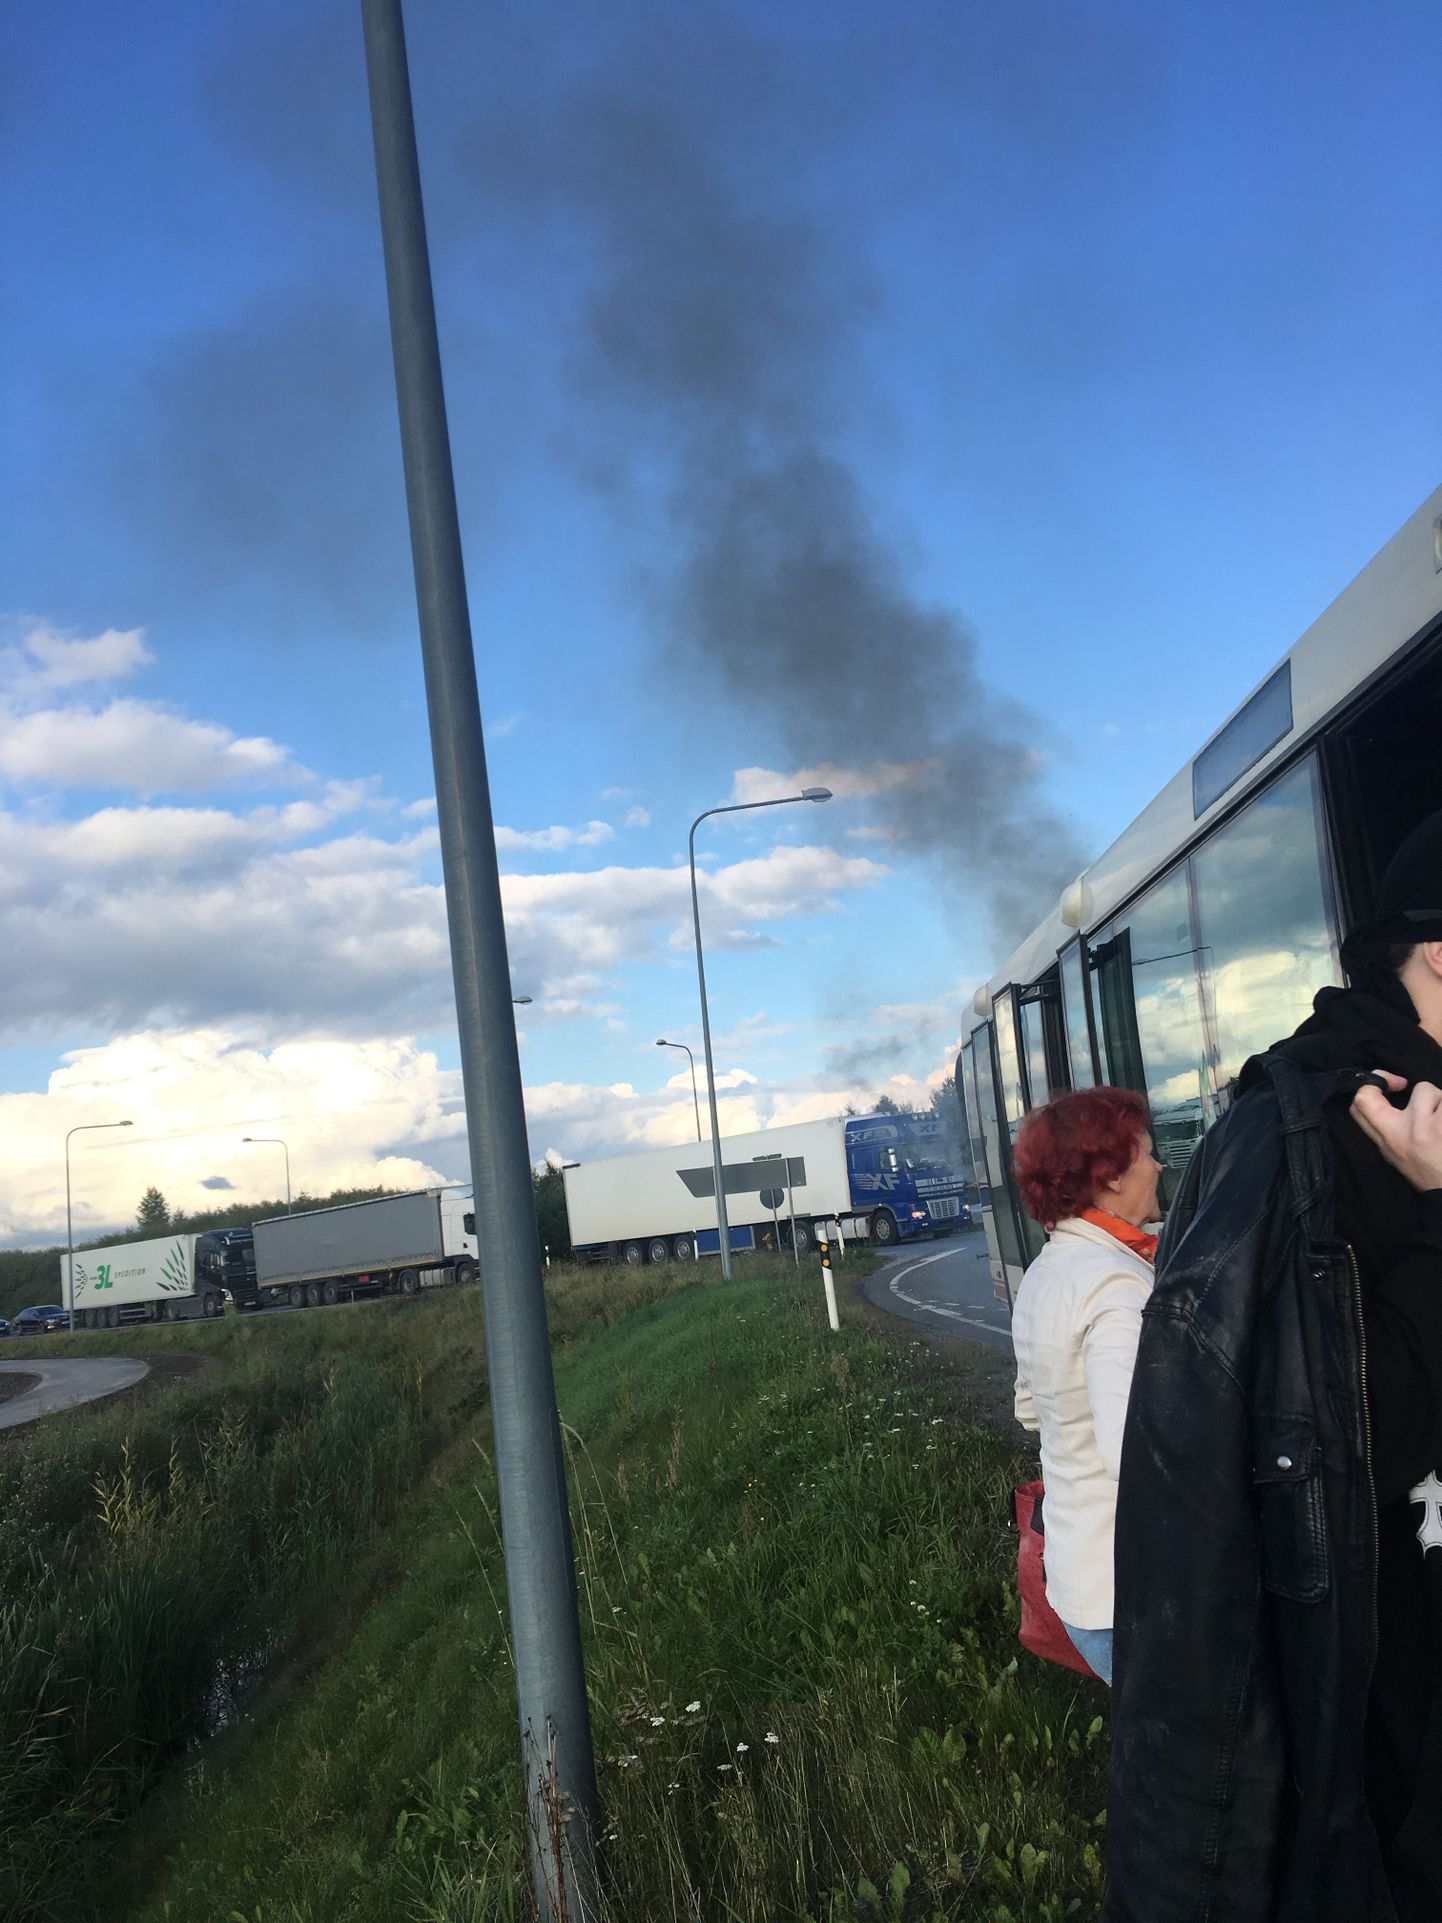 Esmaspäeva õhtul Saugas põlenud bussi roolis olnud bussitjuhti tabas päev hiljem liinil eelmise päeva õnnetuspaiga lähedal jälle äpardus, kui viimasel ringil buss taas rikki läks.